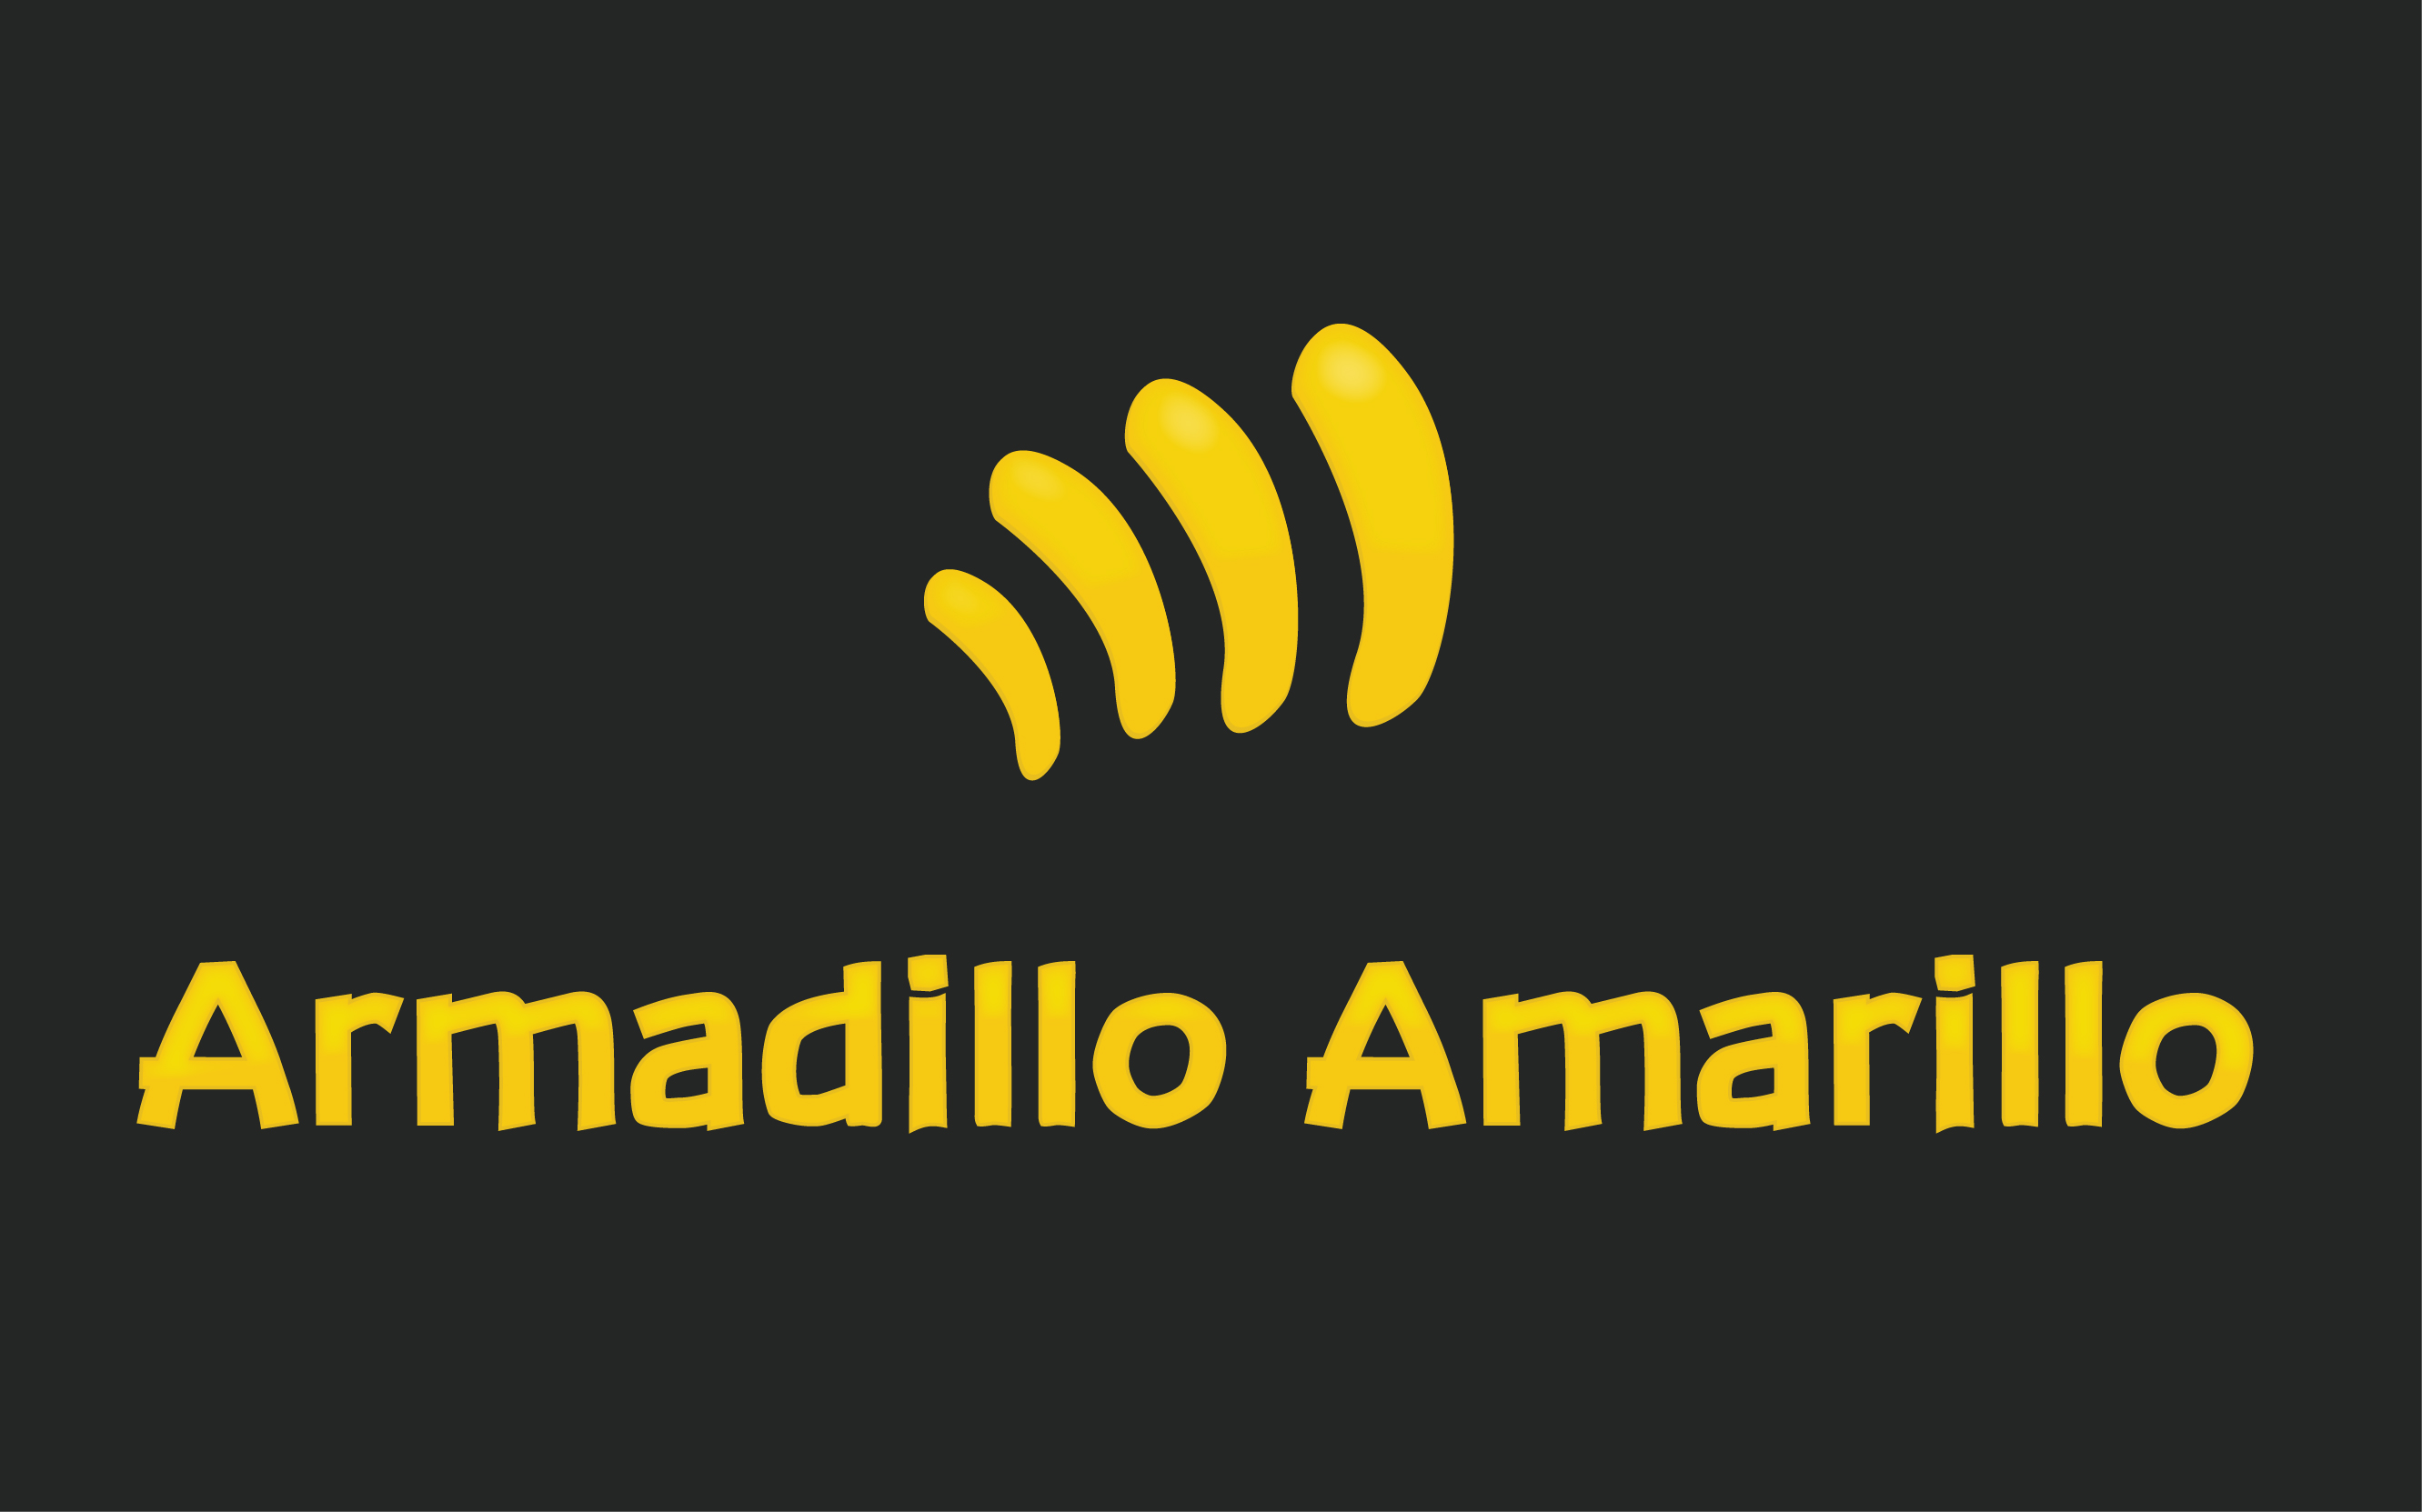 (c) Armadilloamarillo.com